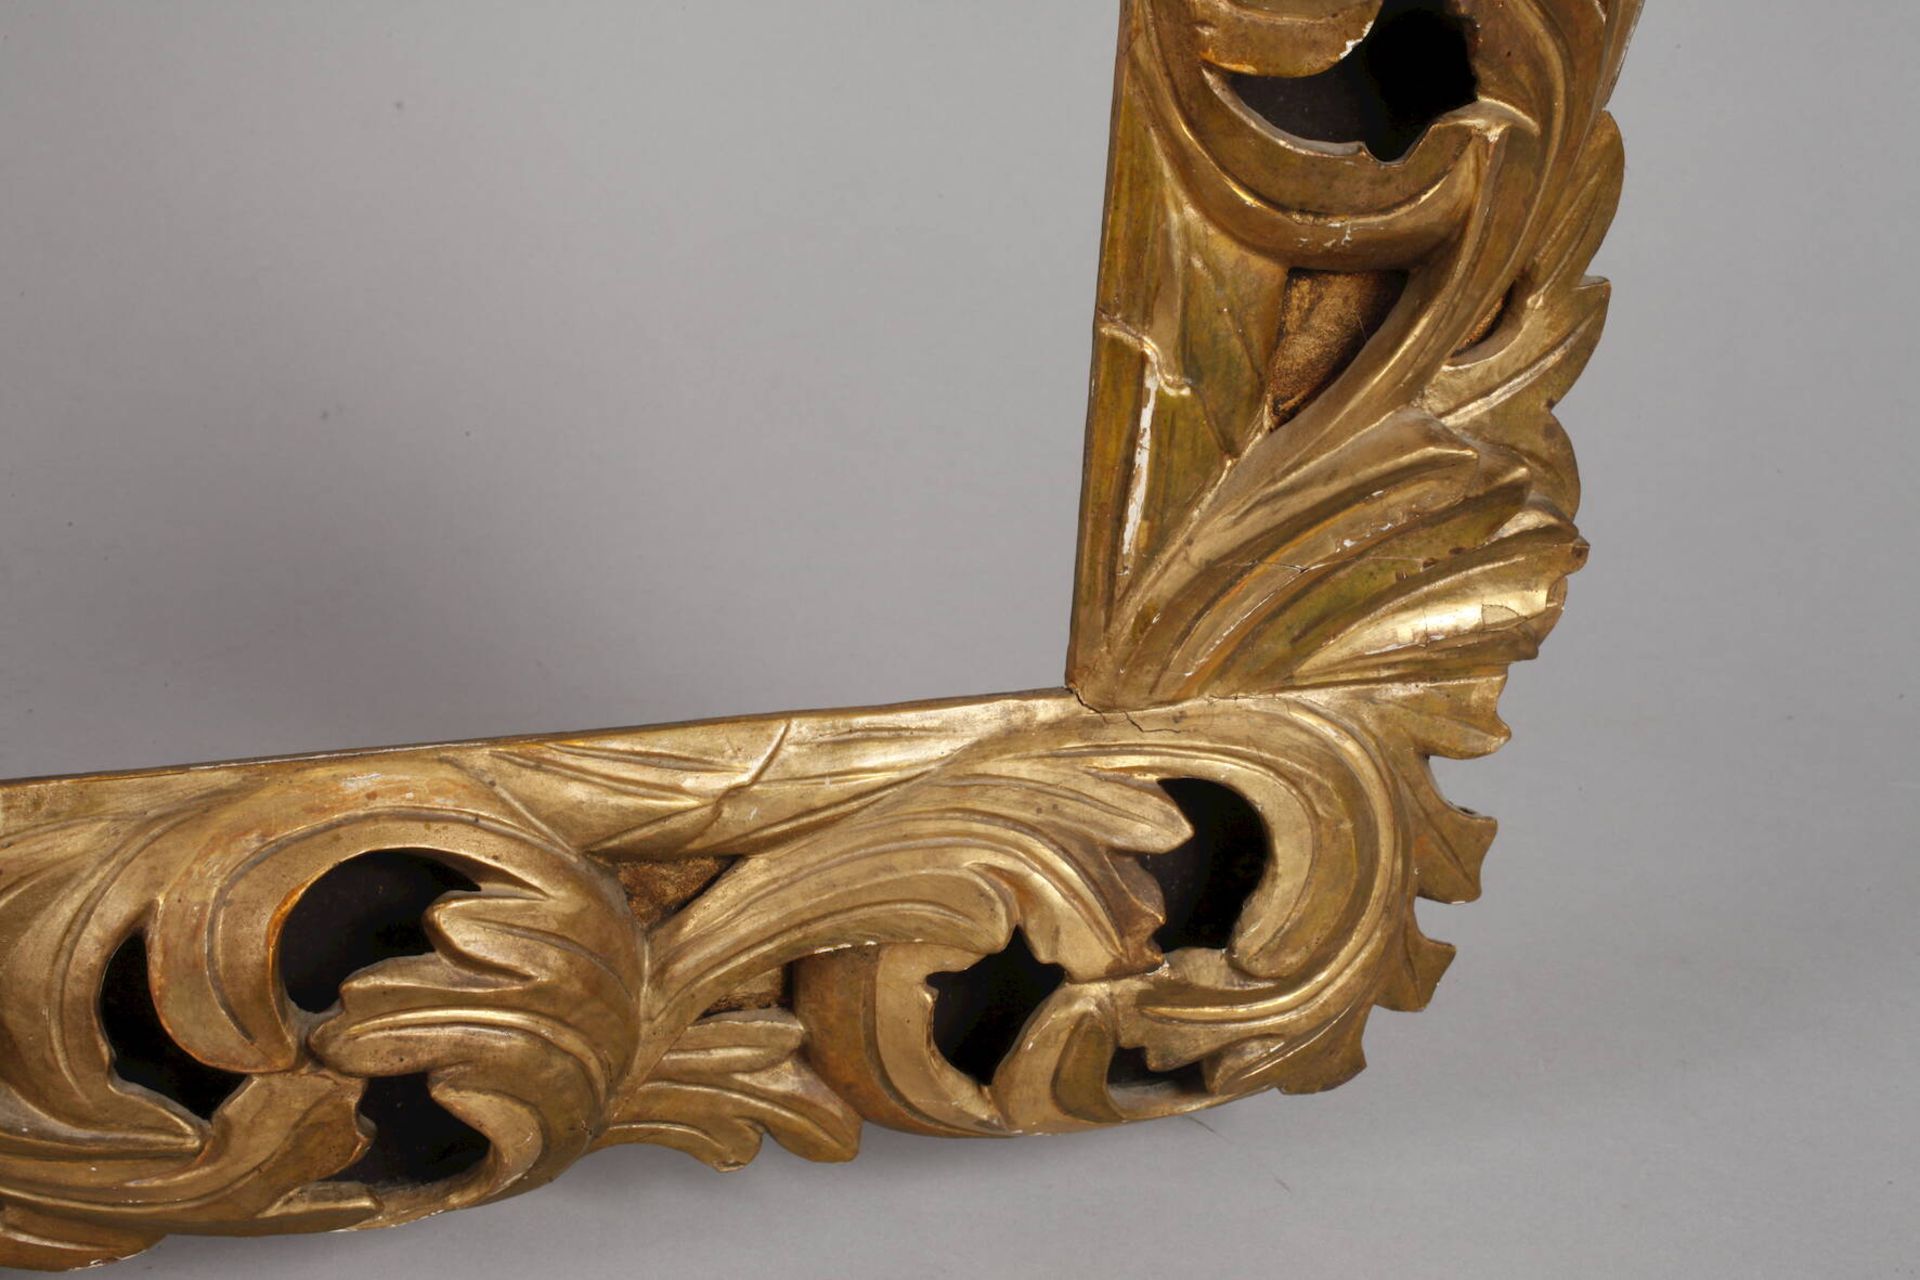 Qualitätsvoller Florentiner Rahmen19. Jh., aufwendig geschnitzt, hohl gearbeitet, blattvergoldet, - Bild 2 aus 5